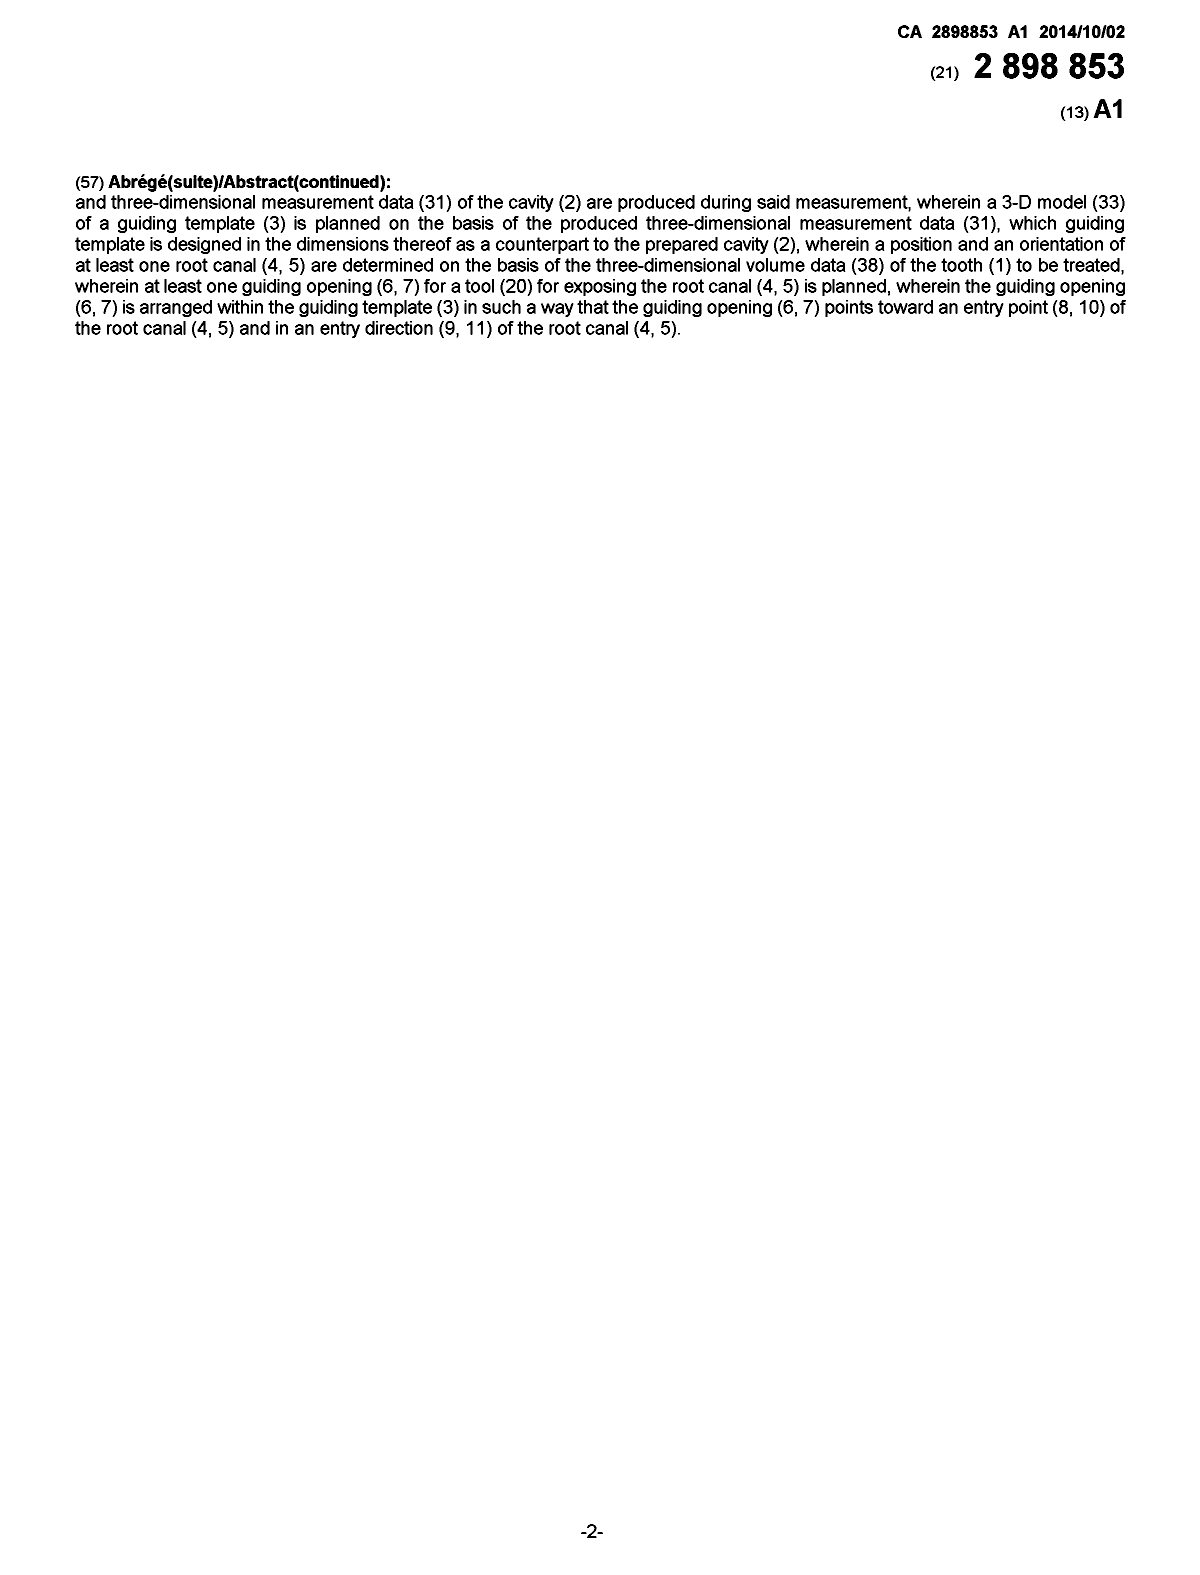 Document de brevet canadien 2898853. Page couverture 20141217. Image 2 de 2